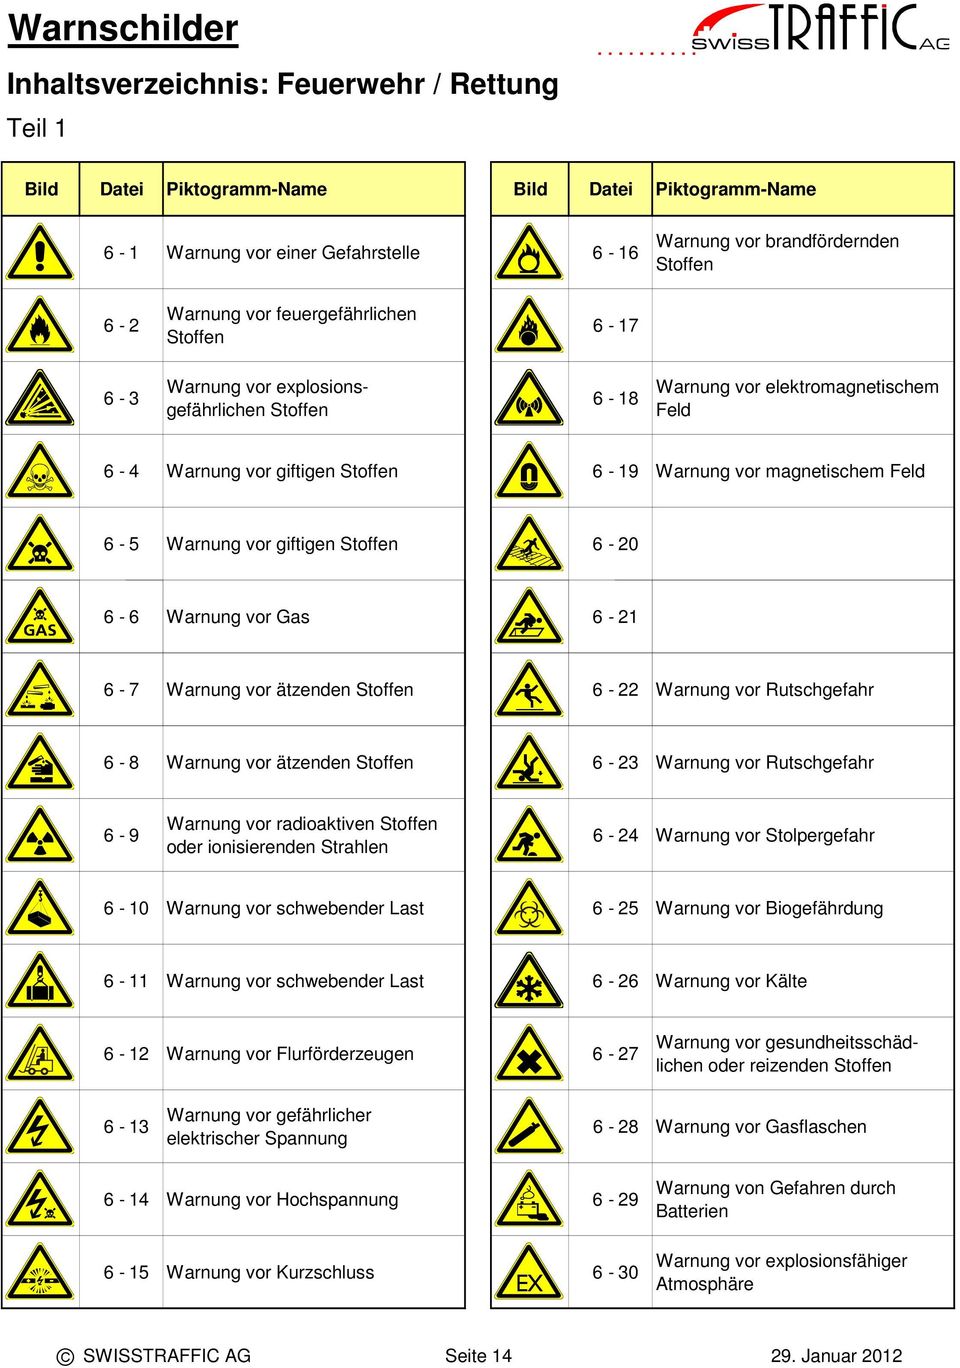 Warnung vor Rutschgefahr 6-8 Warnung vor ätzenden Stoffen 6-3 Warnung vor Rutschgefahr 6-9 Warnung vor radioaktiven Stoffen oder ionisierenden Strahlen 6-4 Warnung vor Stolpergefahr 6-0 Warnung vor